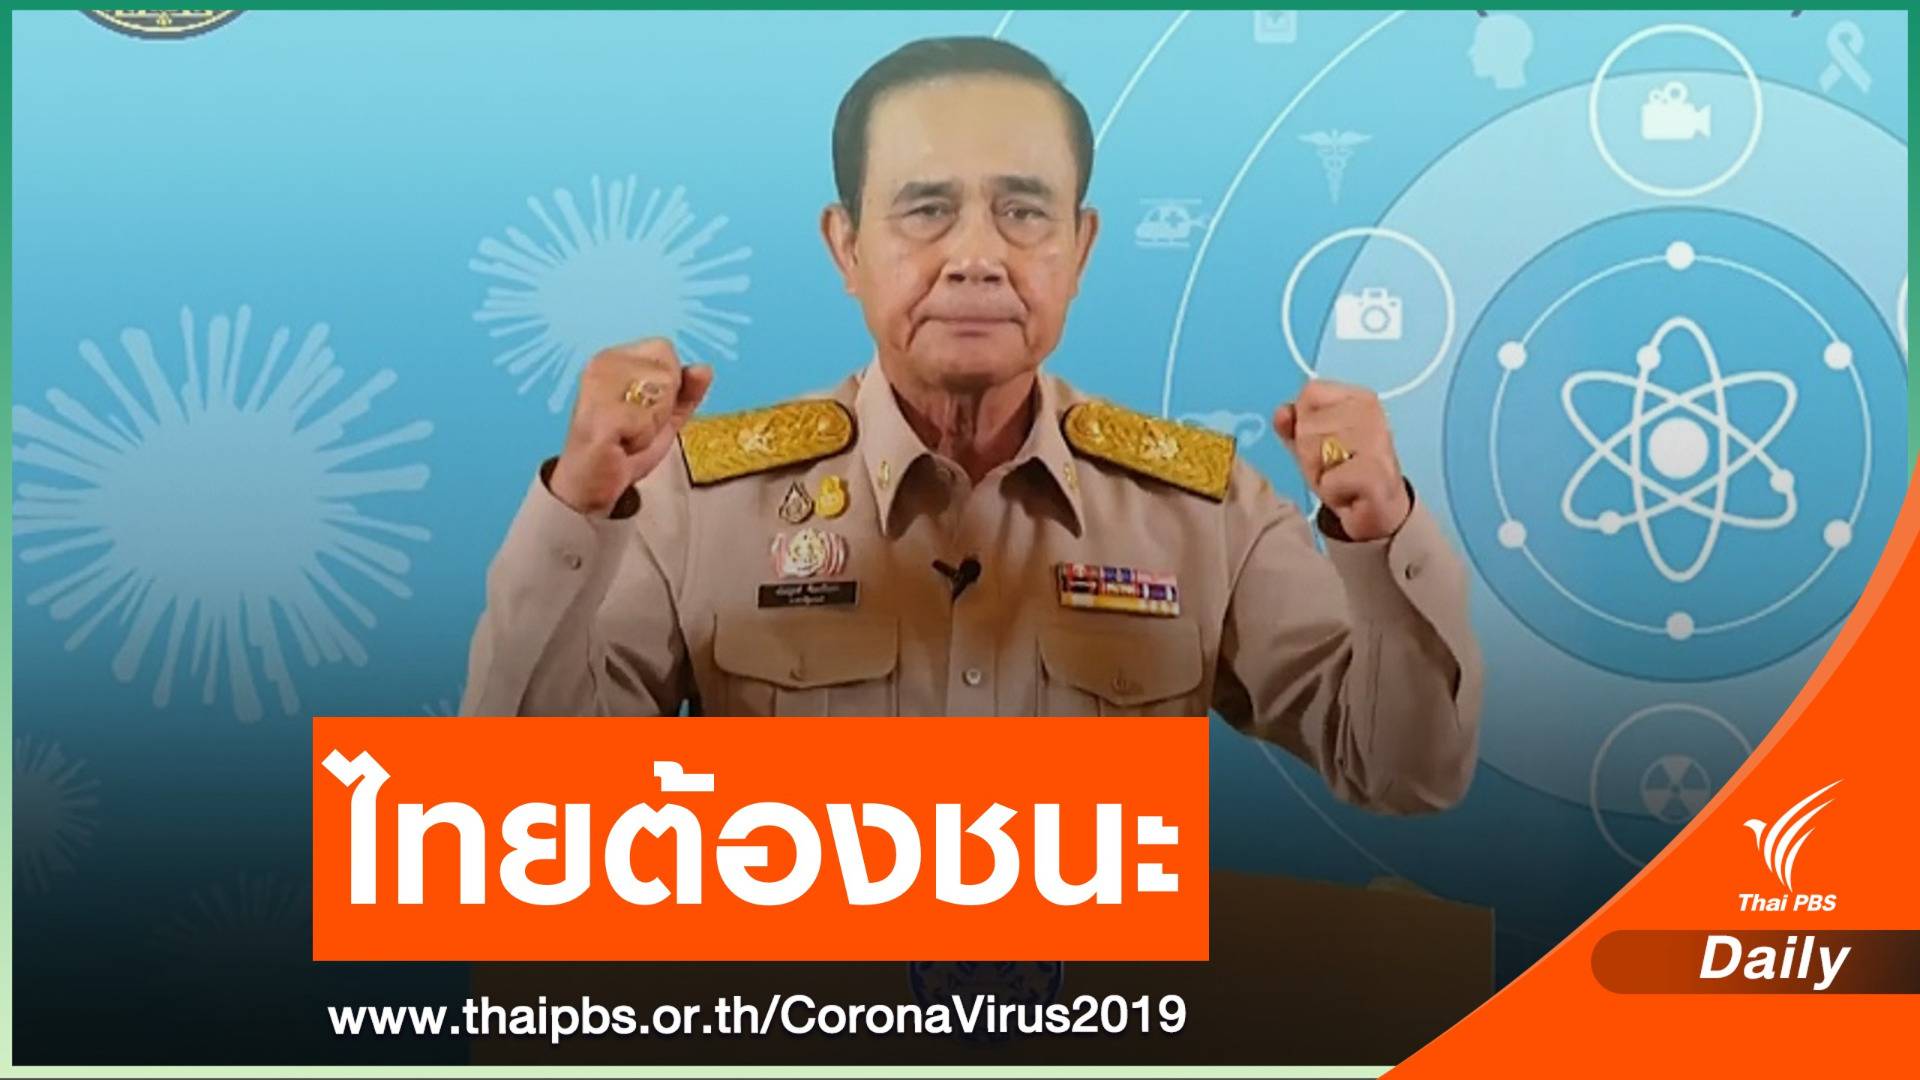 นายกรัฐมนตรีปลุกคนไทยร่วมสู้ศึก COVID-19